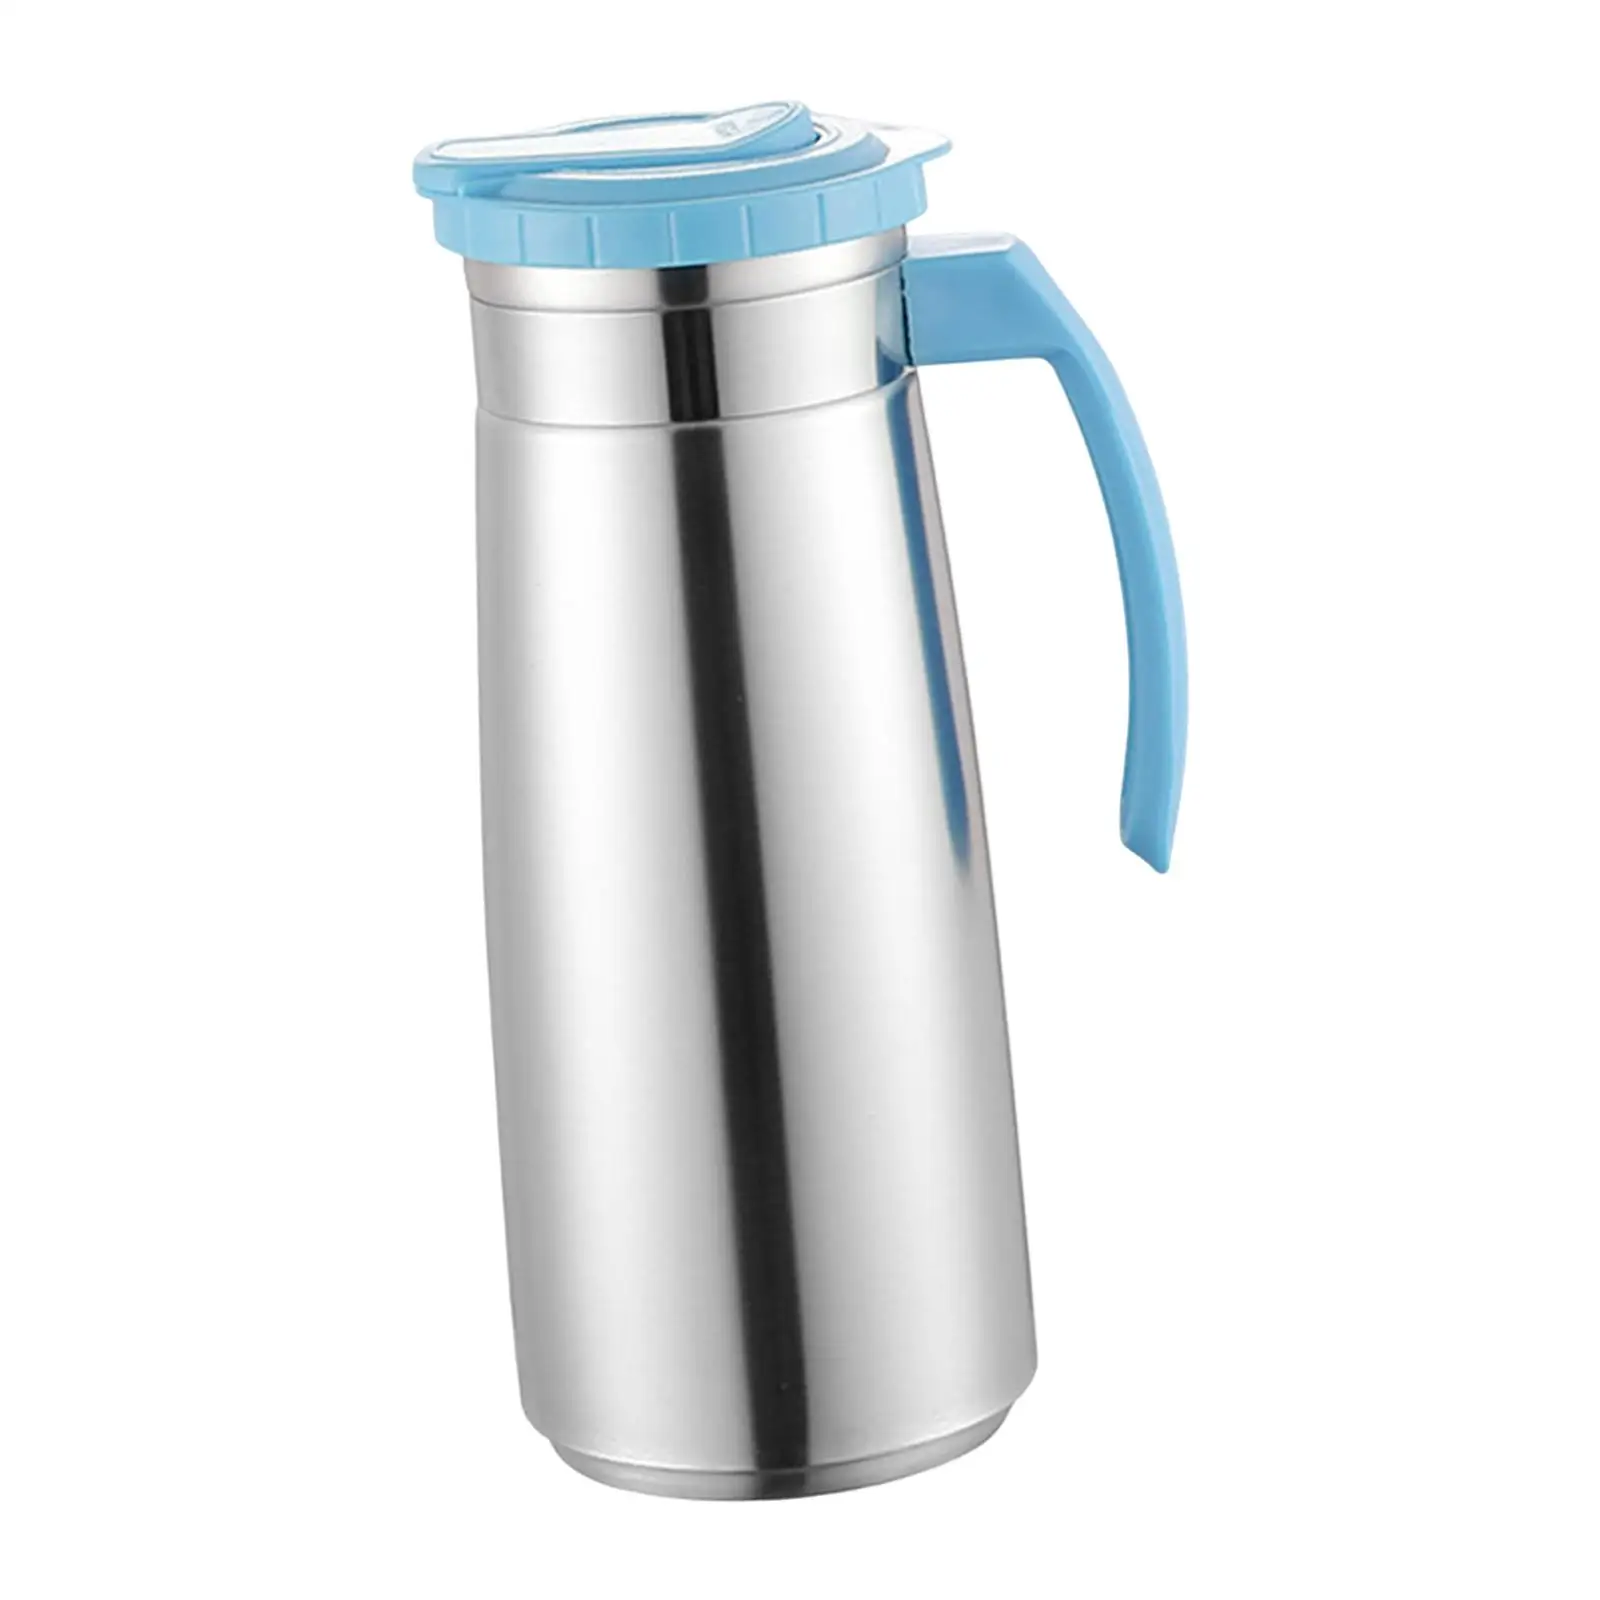 Water Bottle with Handle Stainless Steel Jug for Tea Lemonade Drink